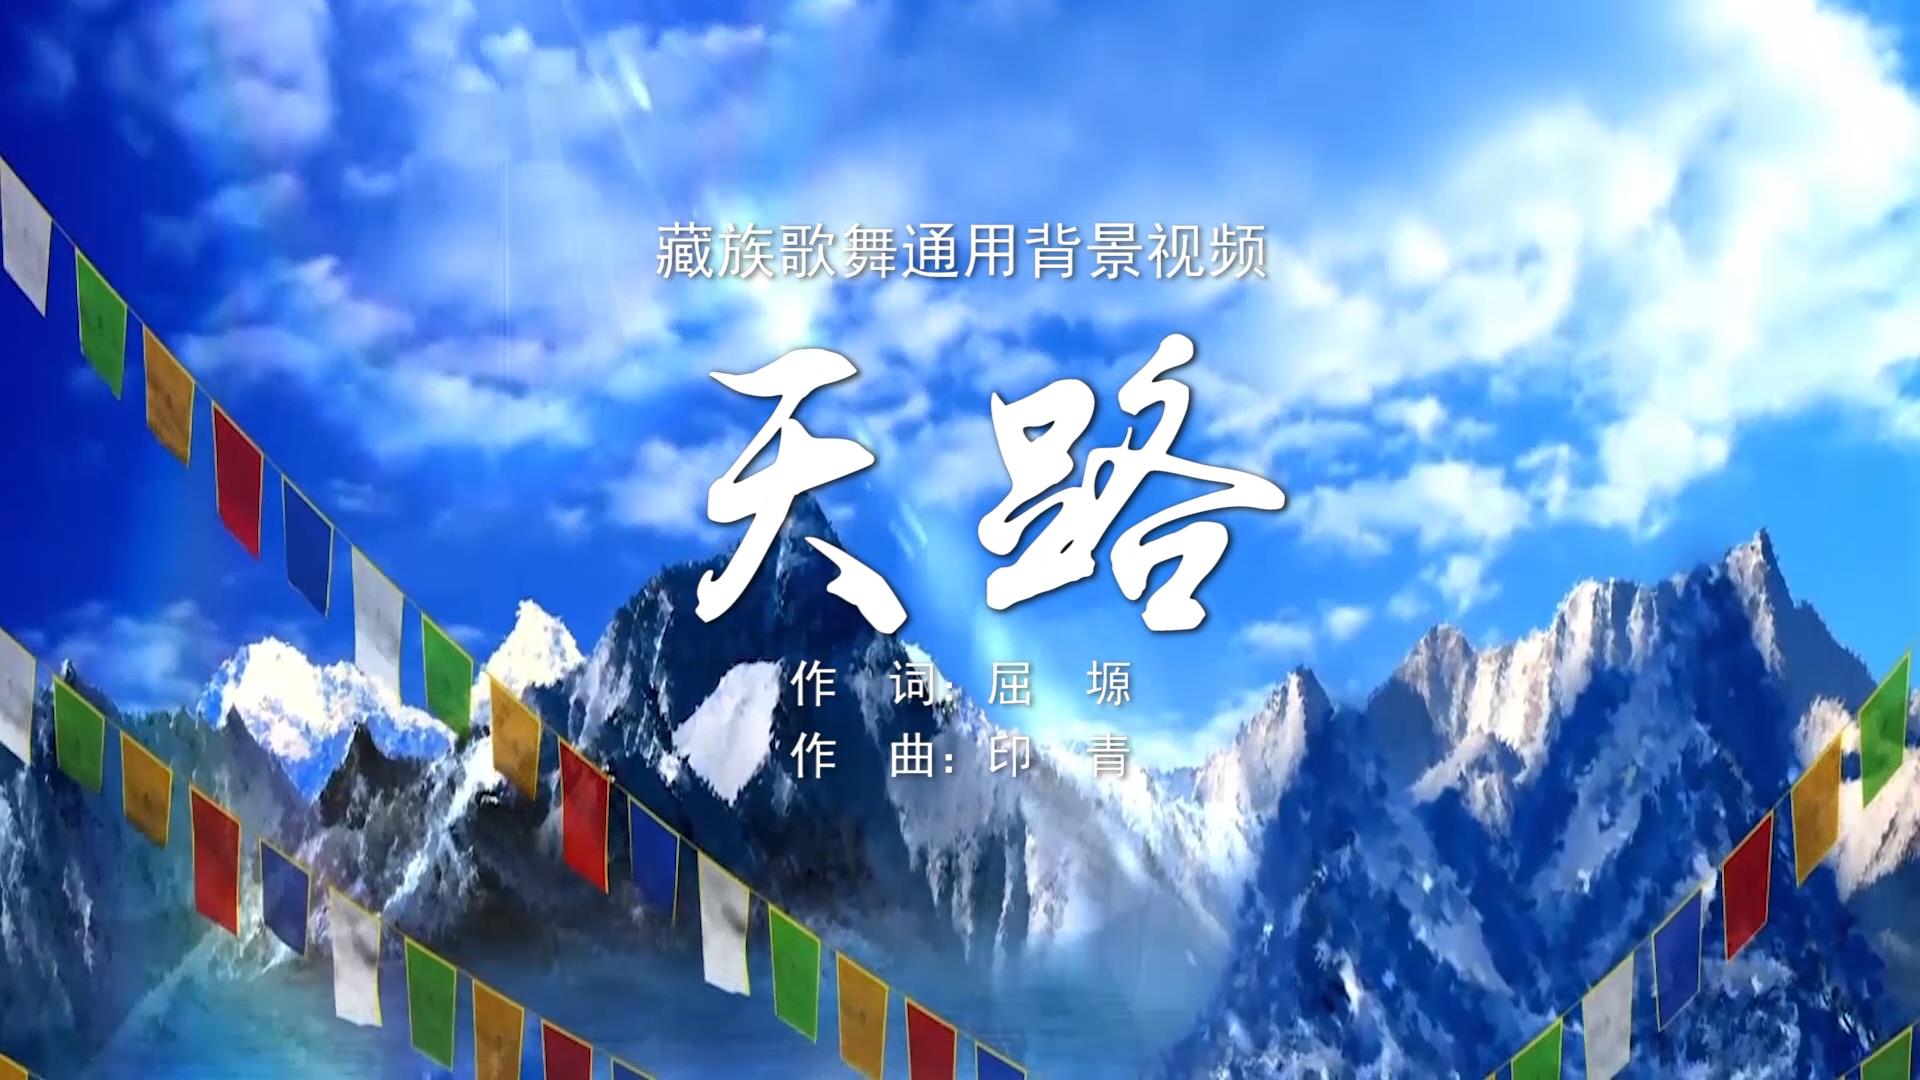 天路 藏族舞蹈MV字幕配乐伴奏民族歌舞LED背景大屏幕视频素材TV